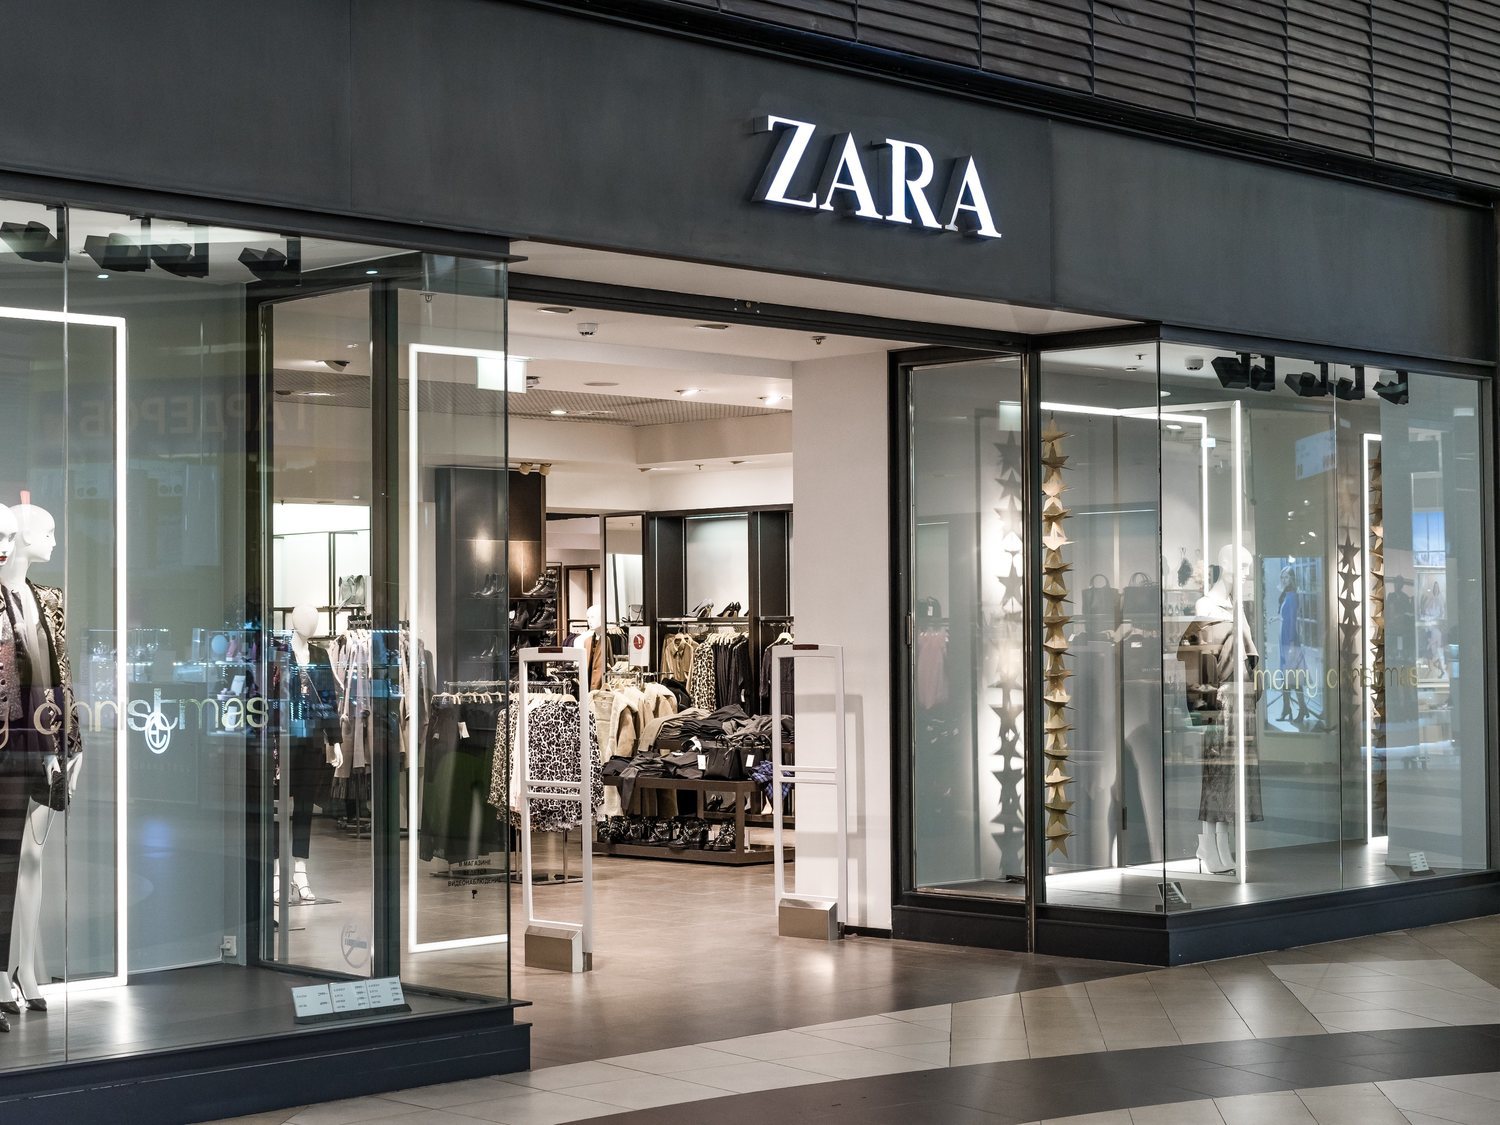 Trabajar en Zara: Así son las condiciones y salarios de sus dependientes y cajeros